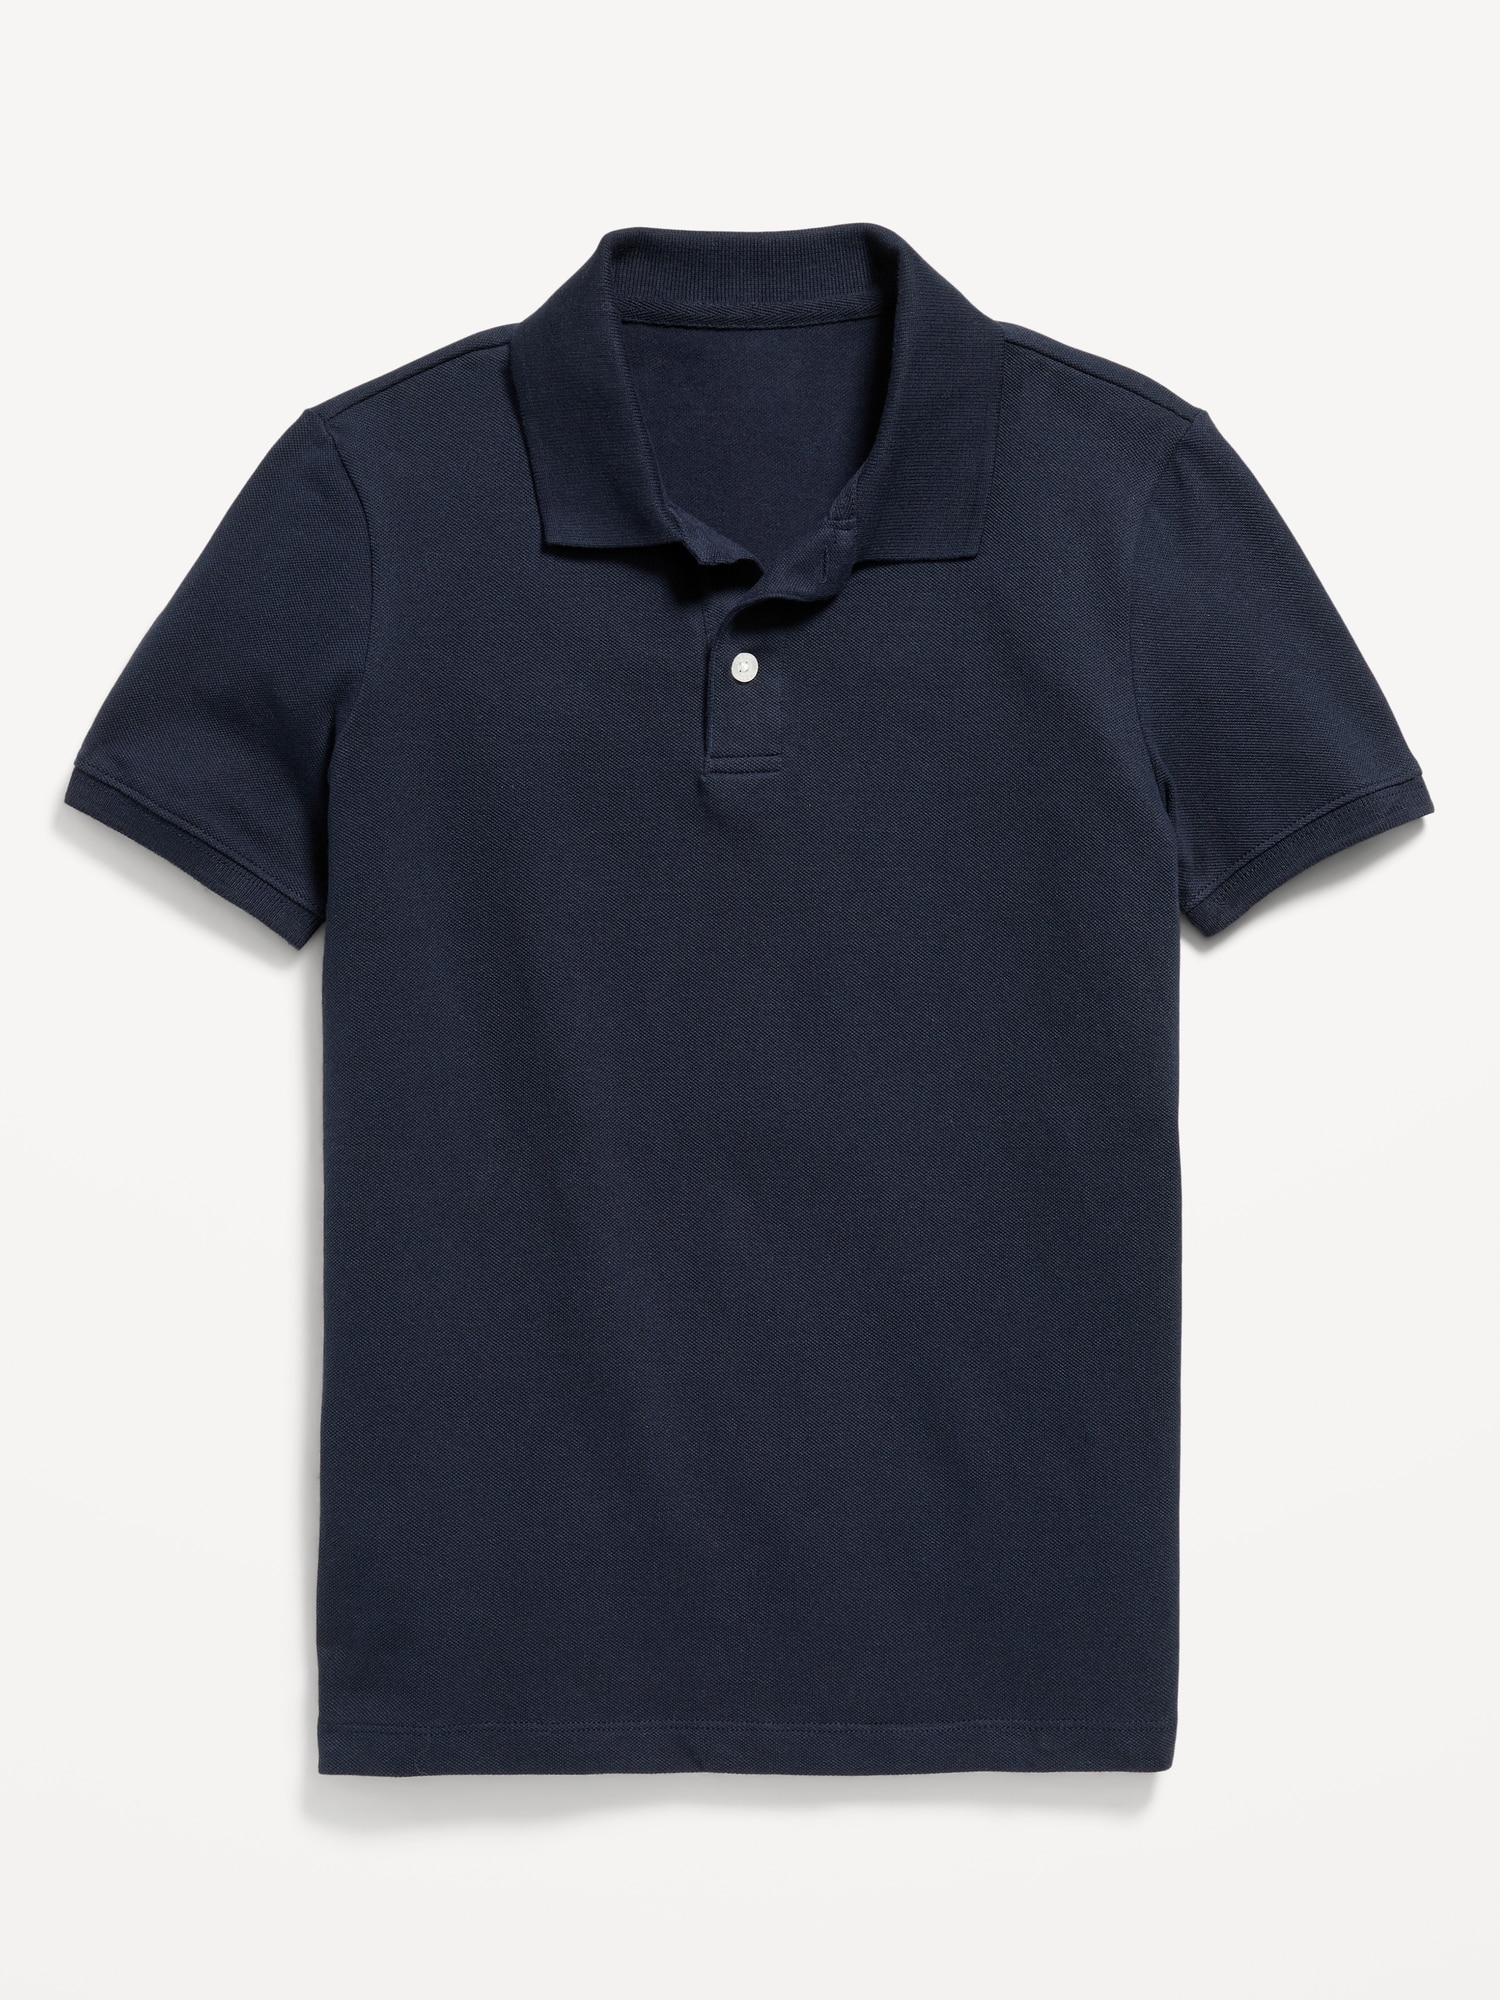 School Uniform Pique Polo Shirt for Boys